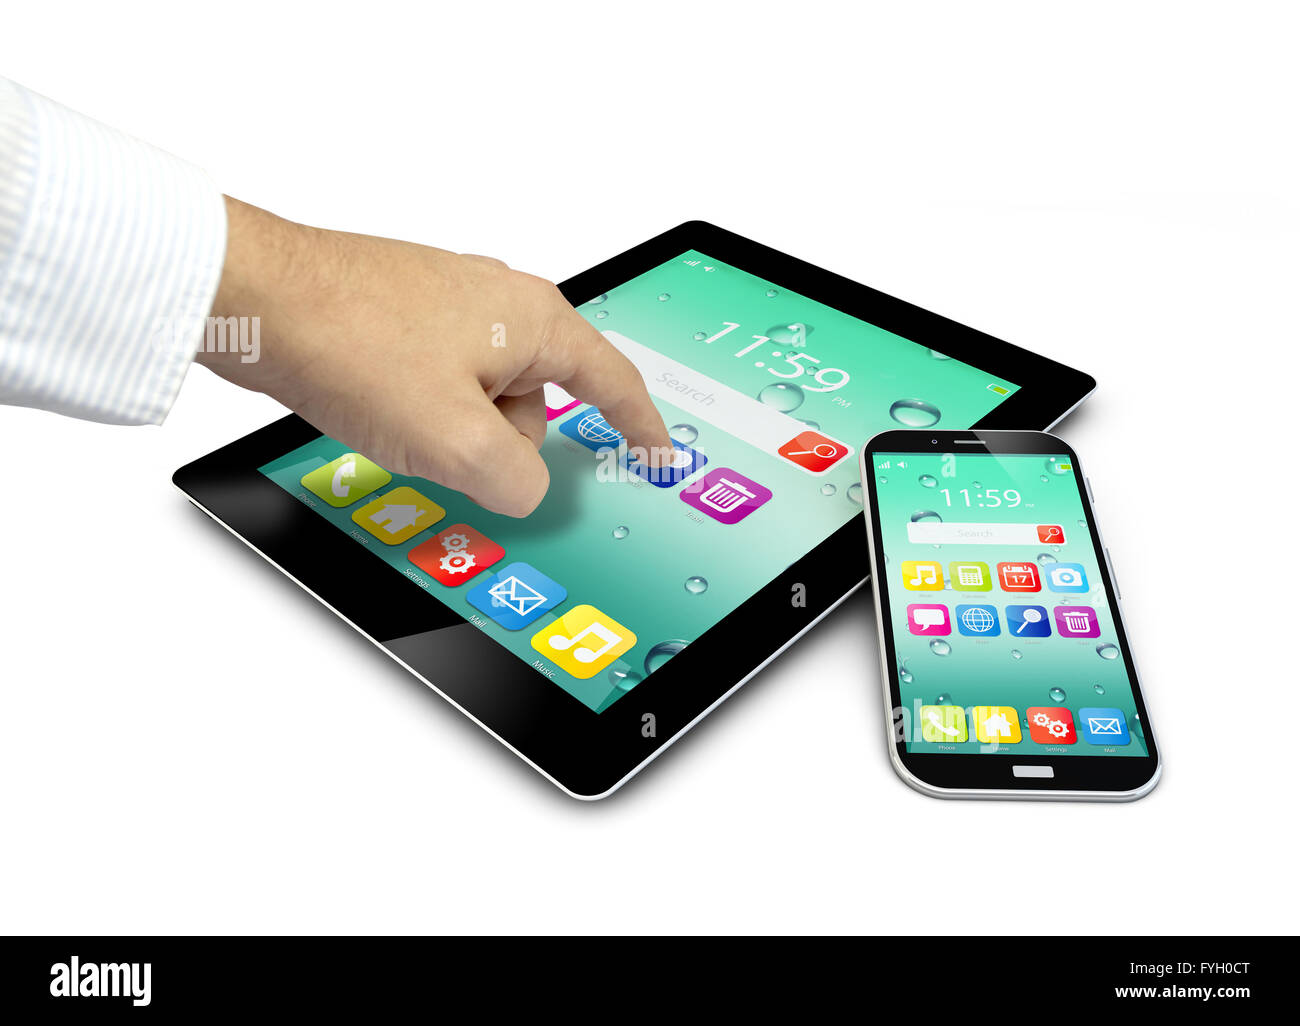 Gruppe von Touchscreen-Geräten mit bunten Schnittstelle farbige Icons und Schaltflächen mit einer Hand berühren des Bildschirms isoliert auf whi Stockfoto